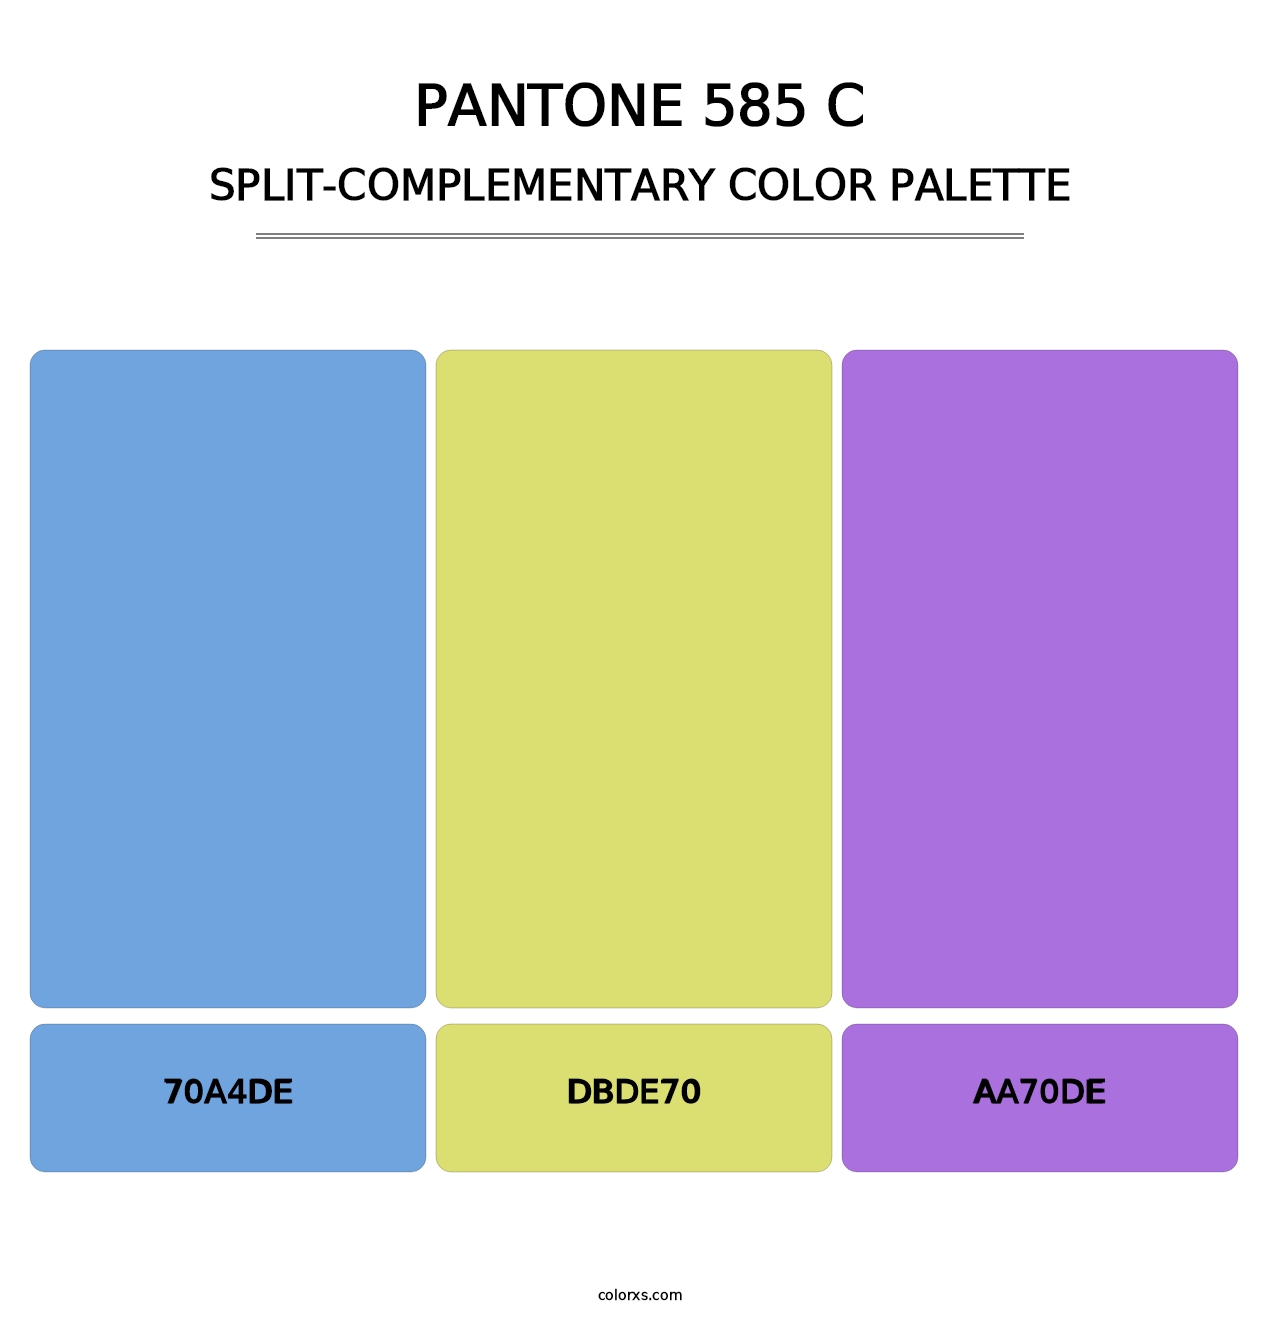 PANTONE 585 C - Split-Complementary Color Palette